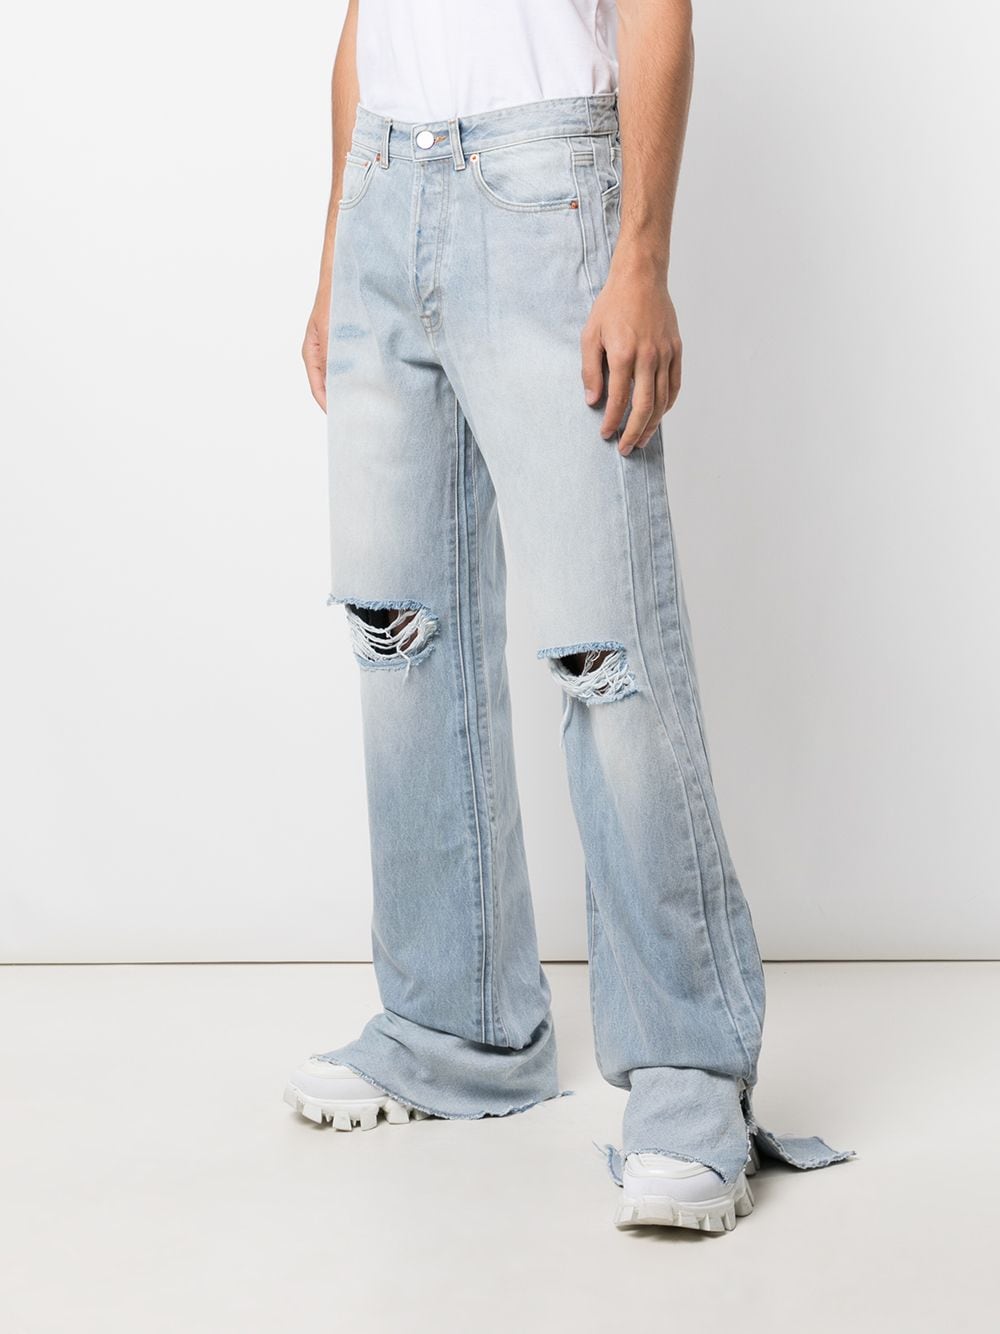 фото Vetements джинсы с подворотами и прорезями